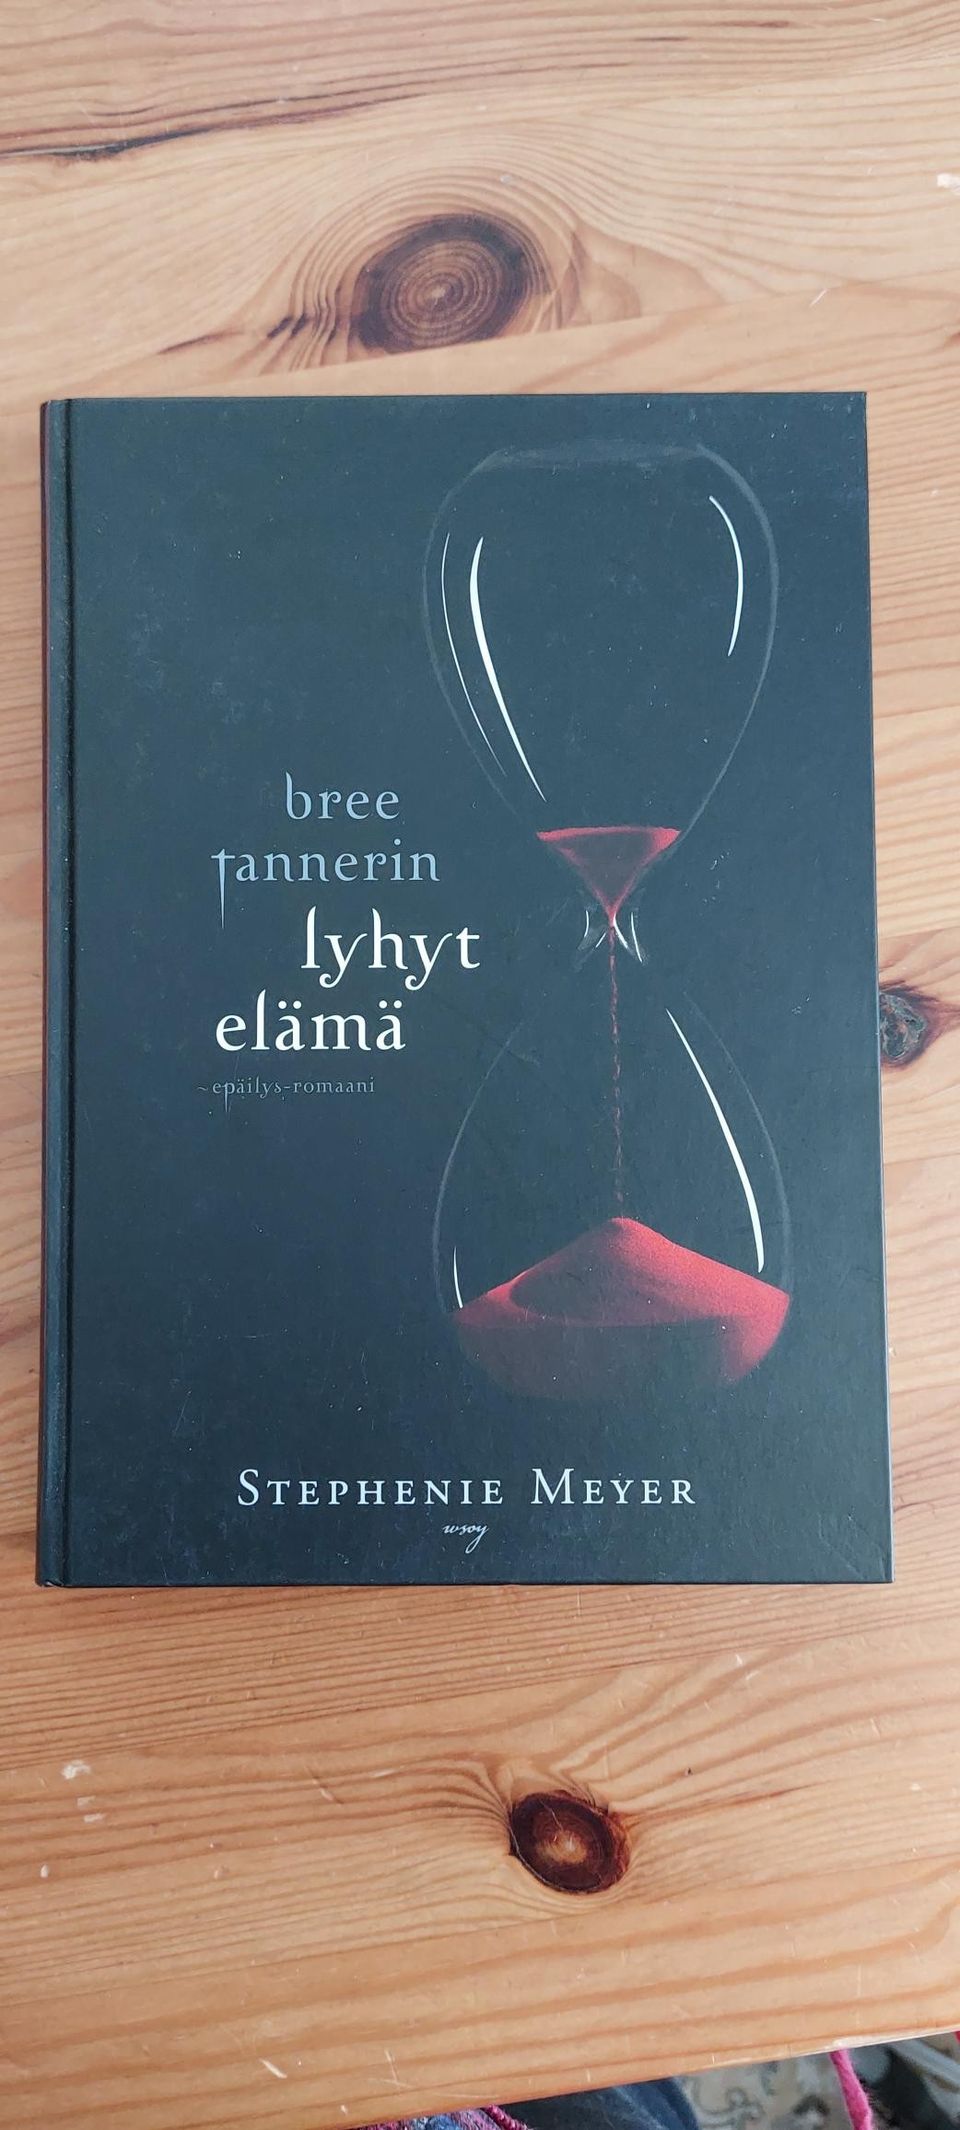 Stephanie Meyer - Bree Tannerin lyhyt elämä-kirja